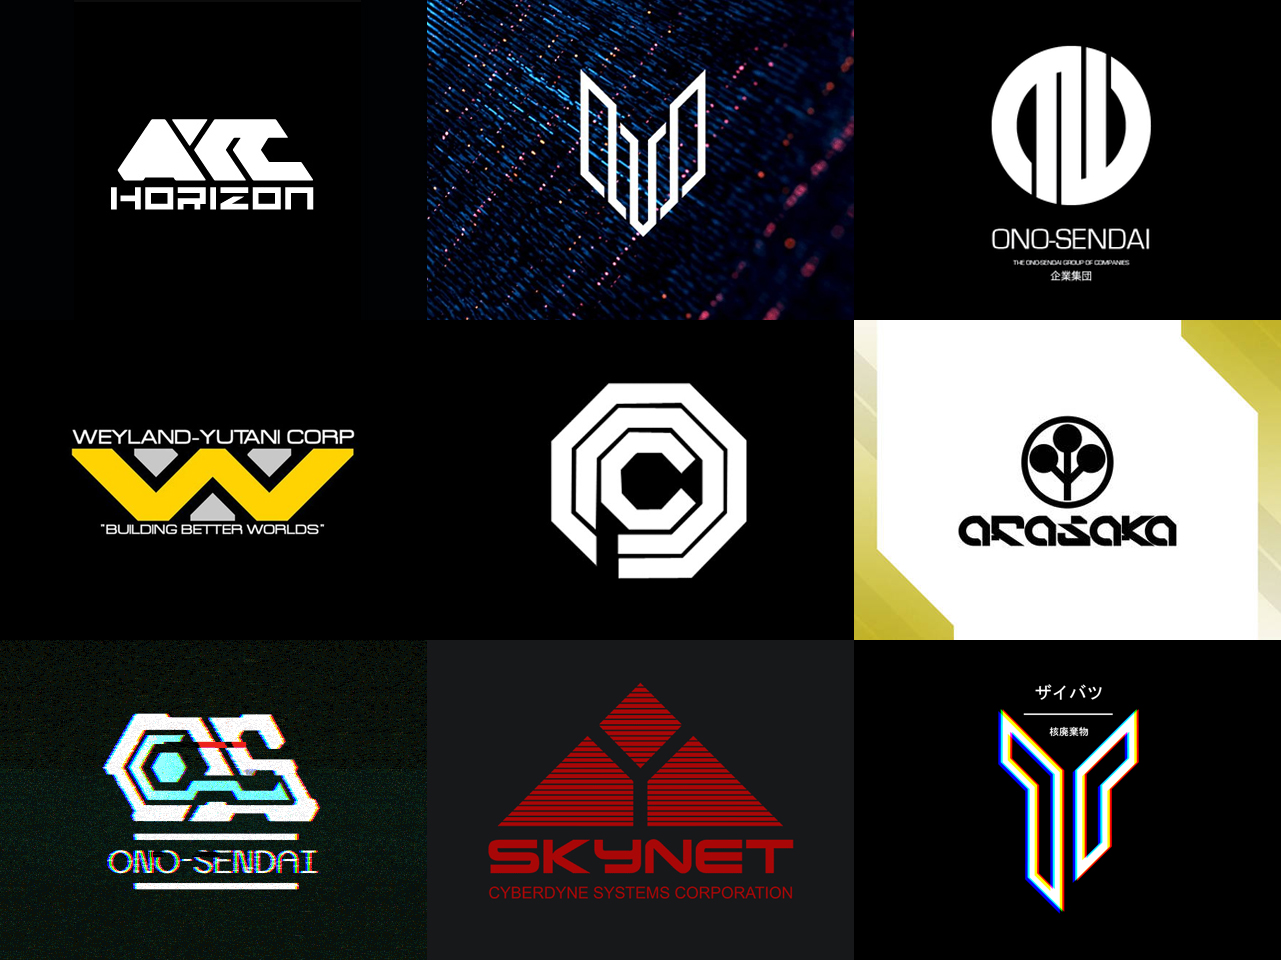 Cyberpunk Logos In 2021 Cyberpunk Punk Logos Cyberpunk Design Images